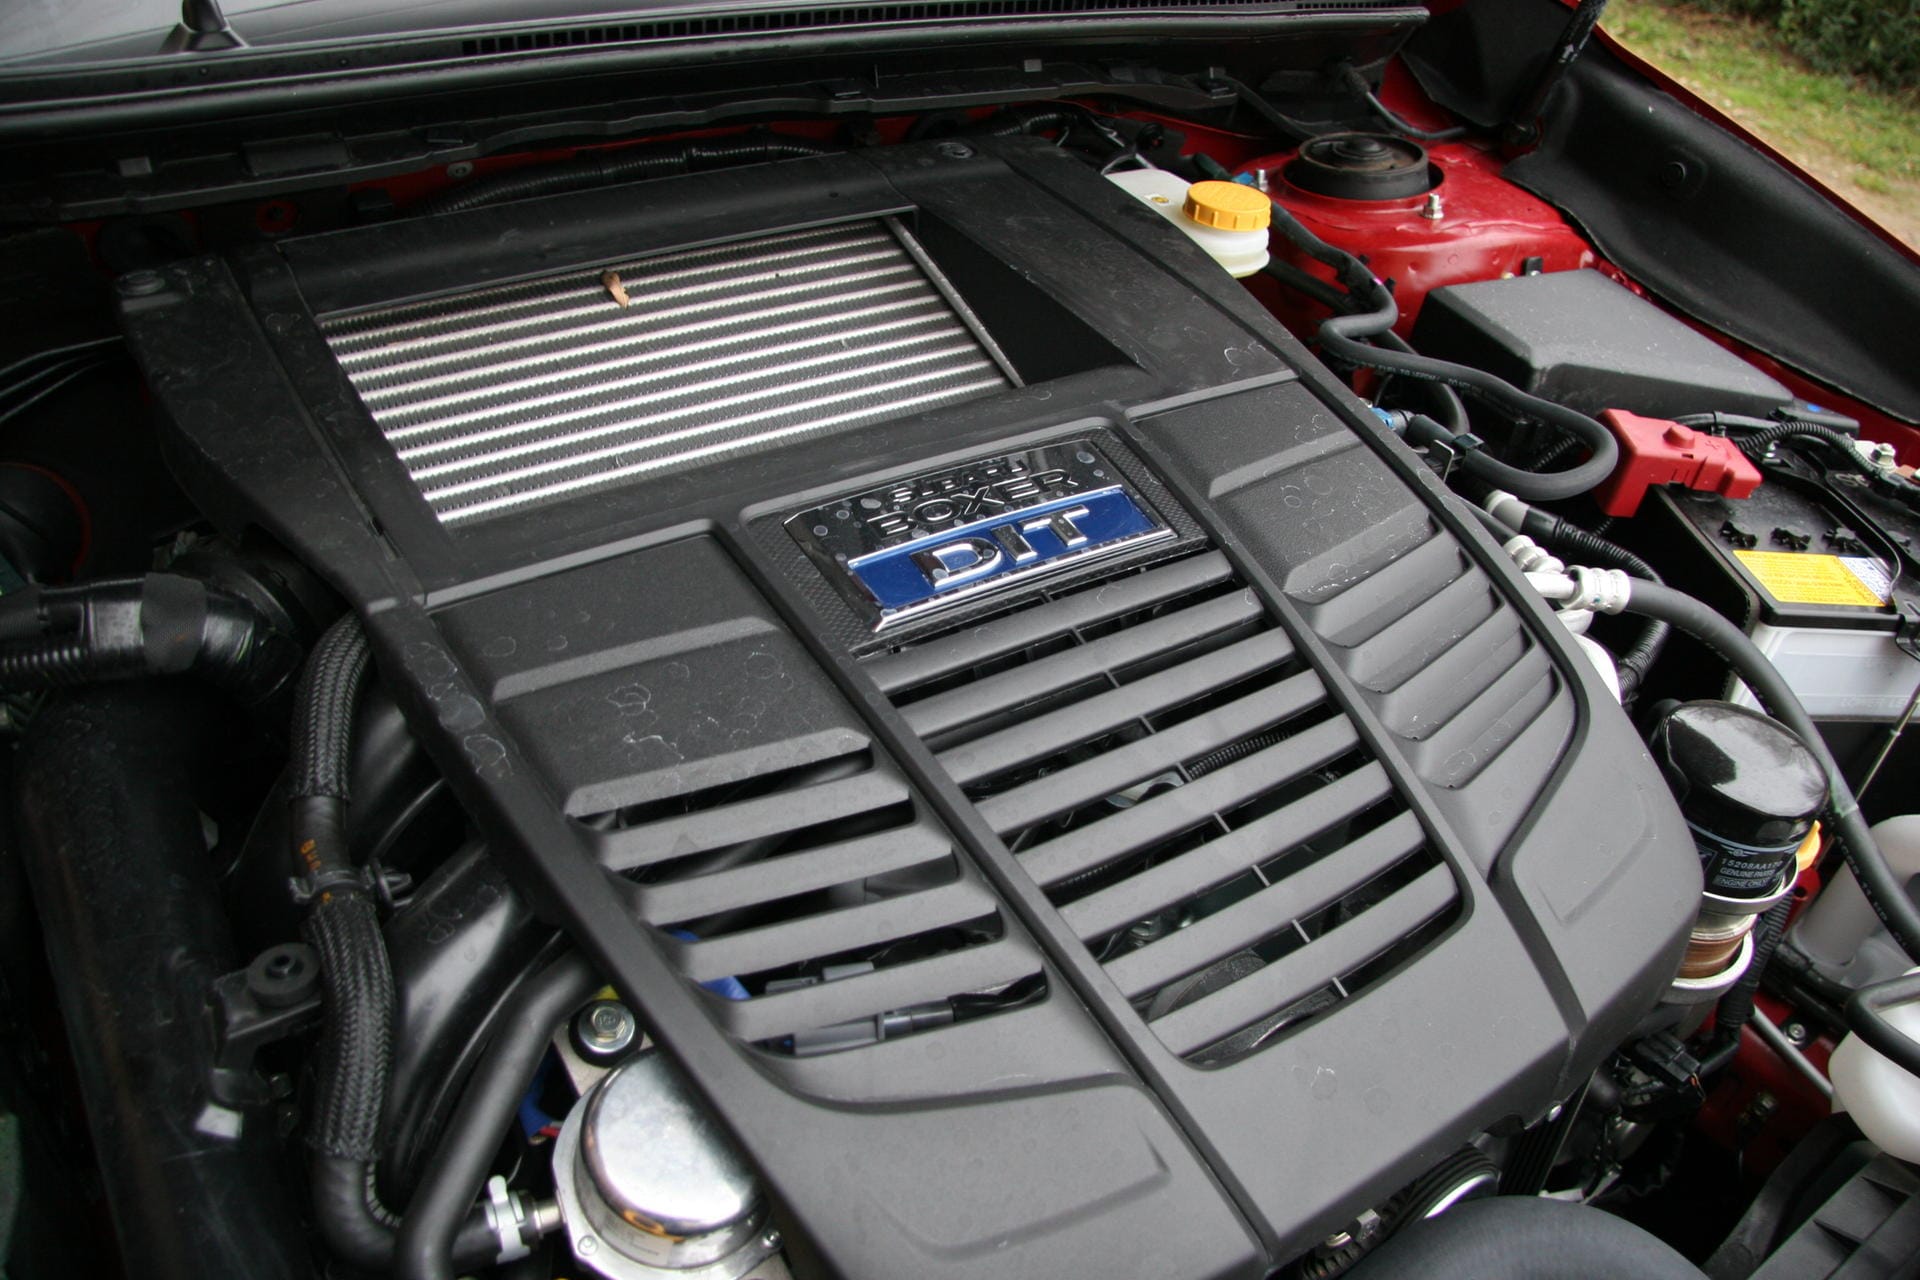 Klar, in einem Subaru arbeitet ein Vierzylinder-Boxer - hier mit 1,6 Litern Hubraum, Turboaufladung und 170 PS.